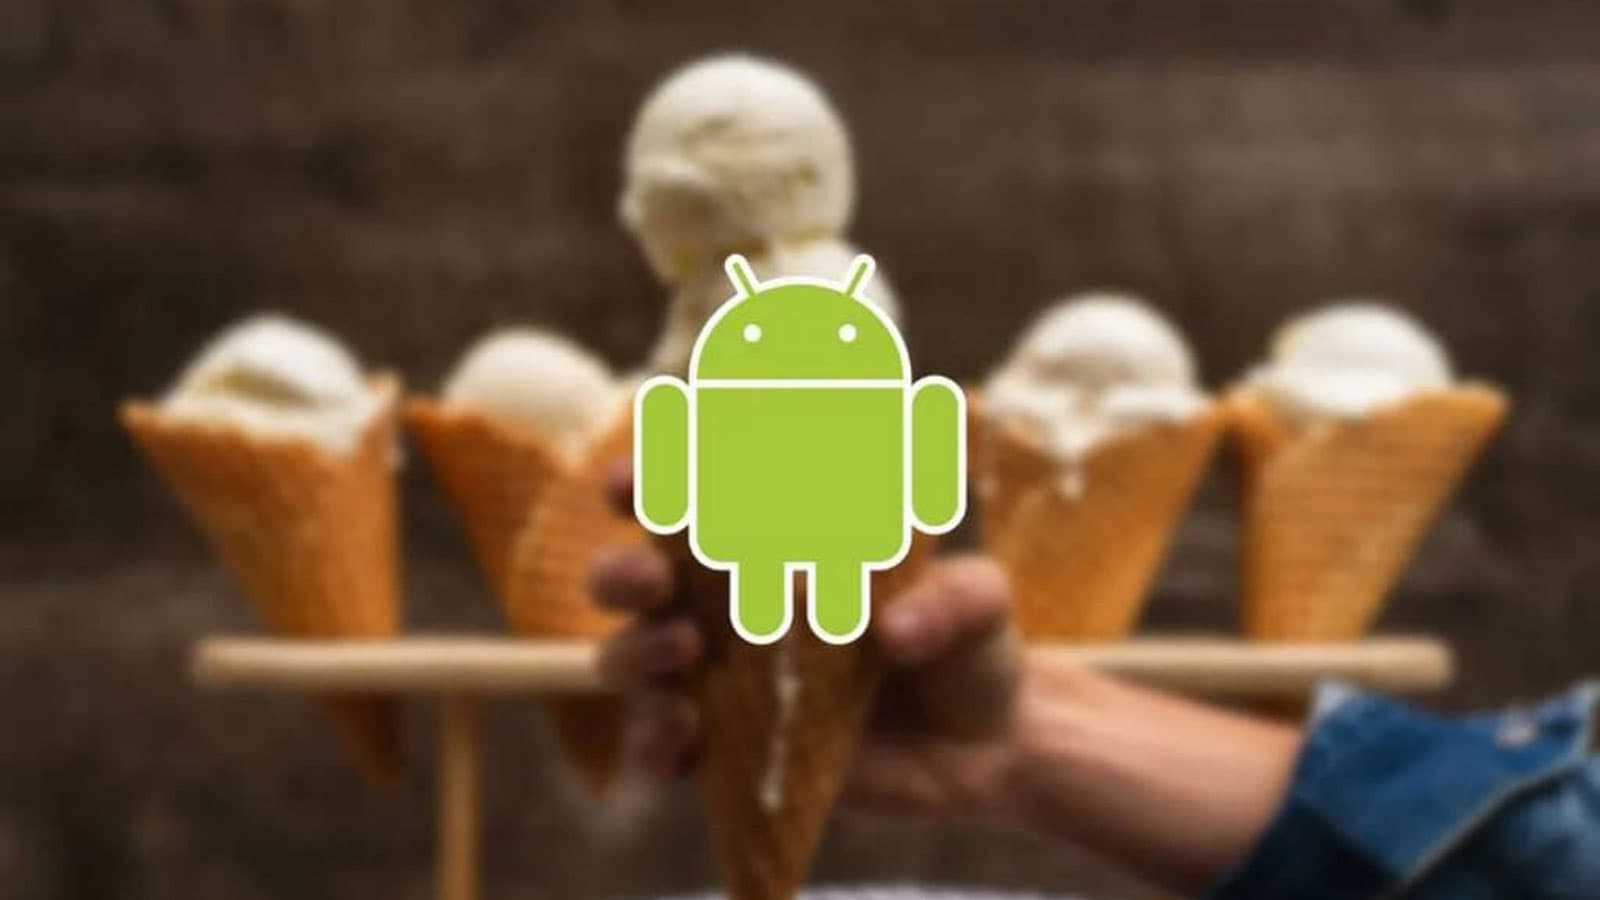 اندروید ۱۵ ؛ تمام قابلیت های Android 15 جدیدترین اندروید گوگل